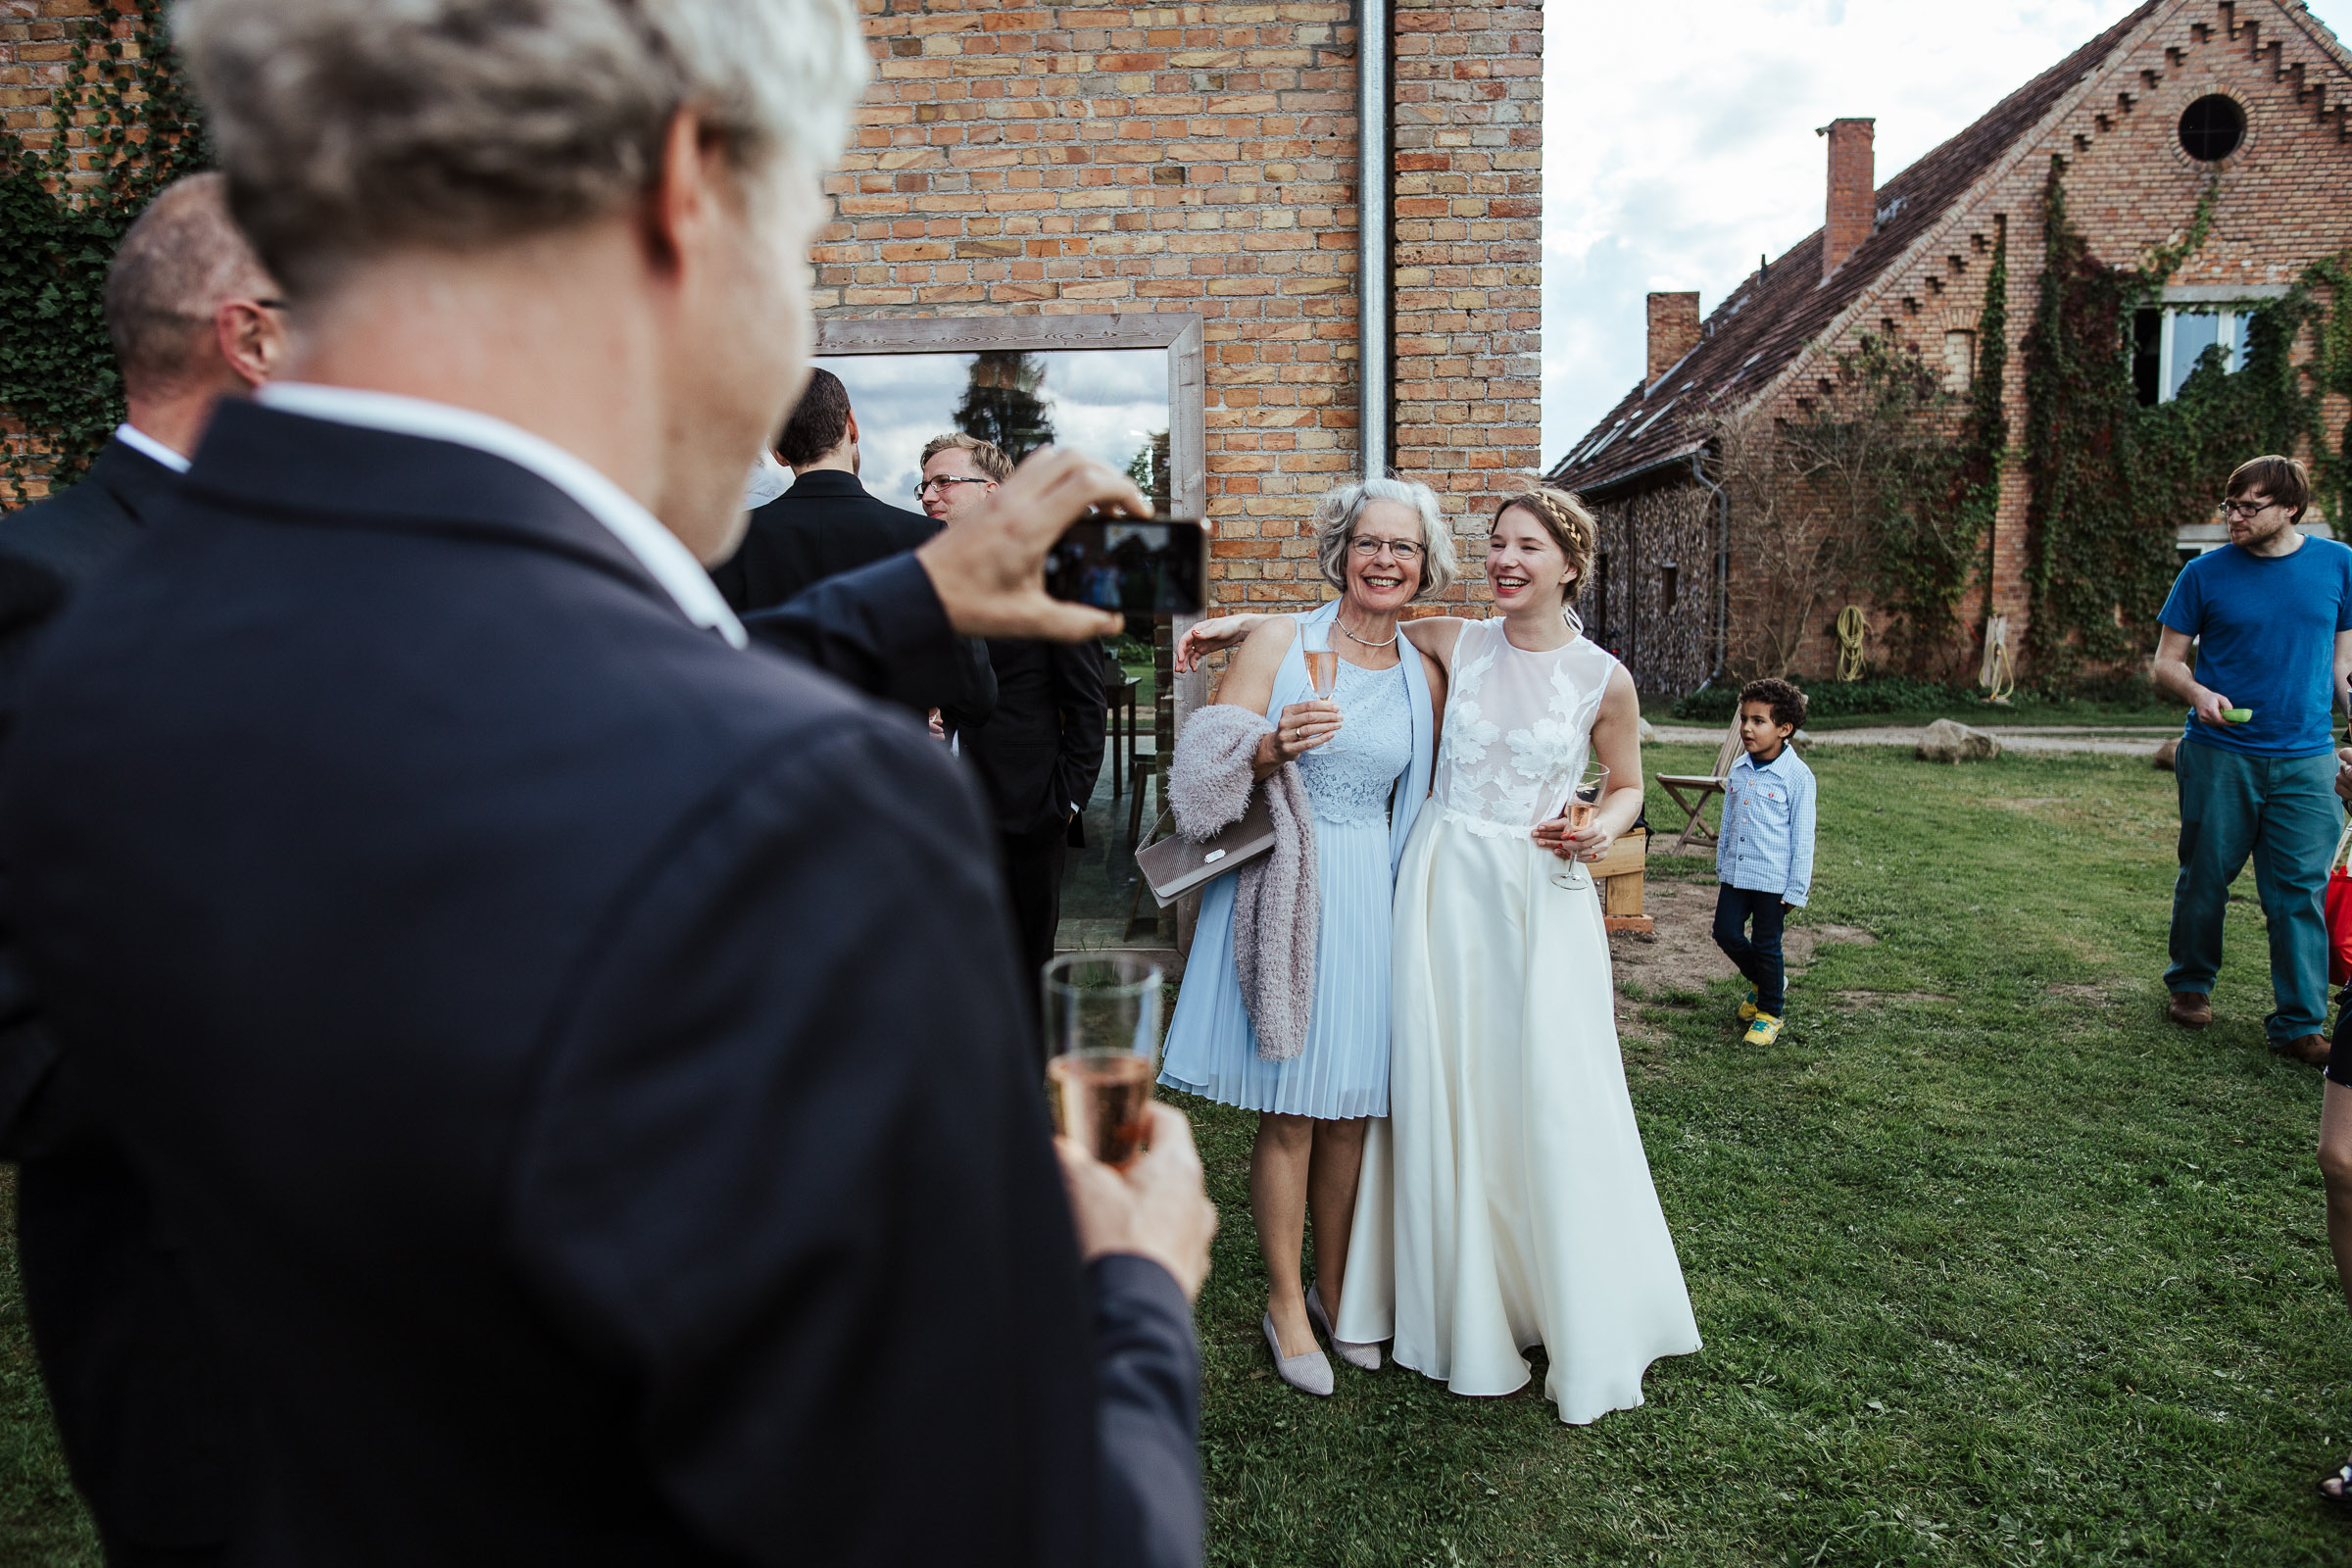 Landhochzeit: Braut wird fotografiert mit Hochzeitsgast